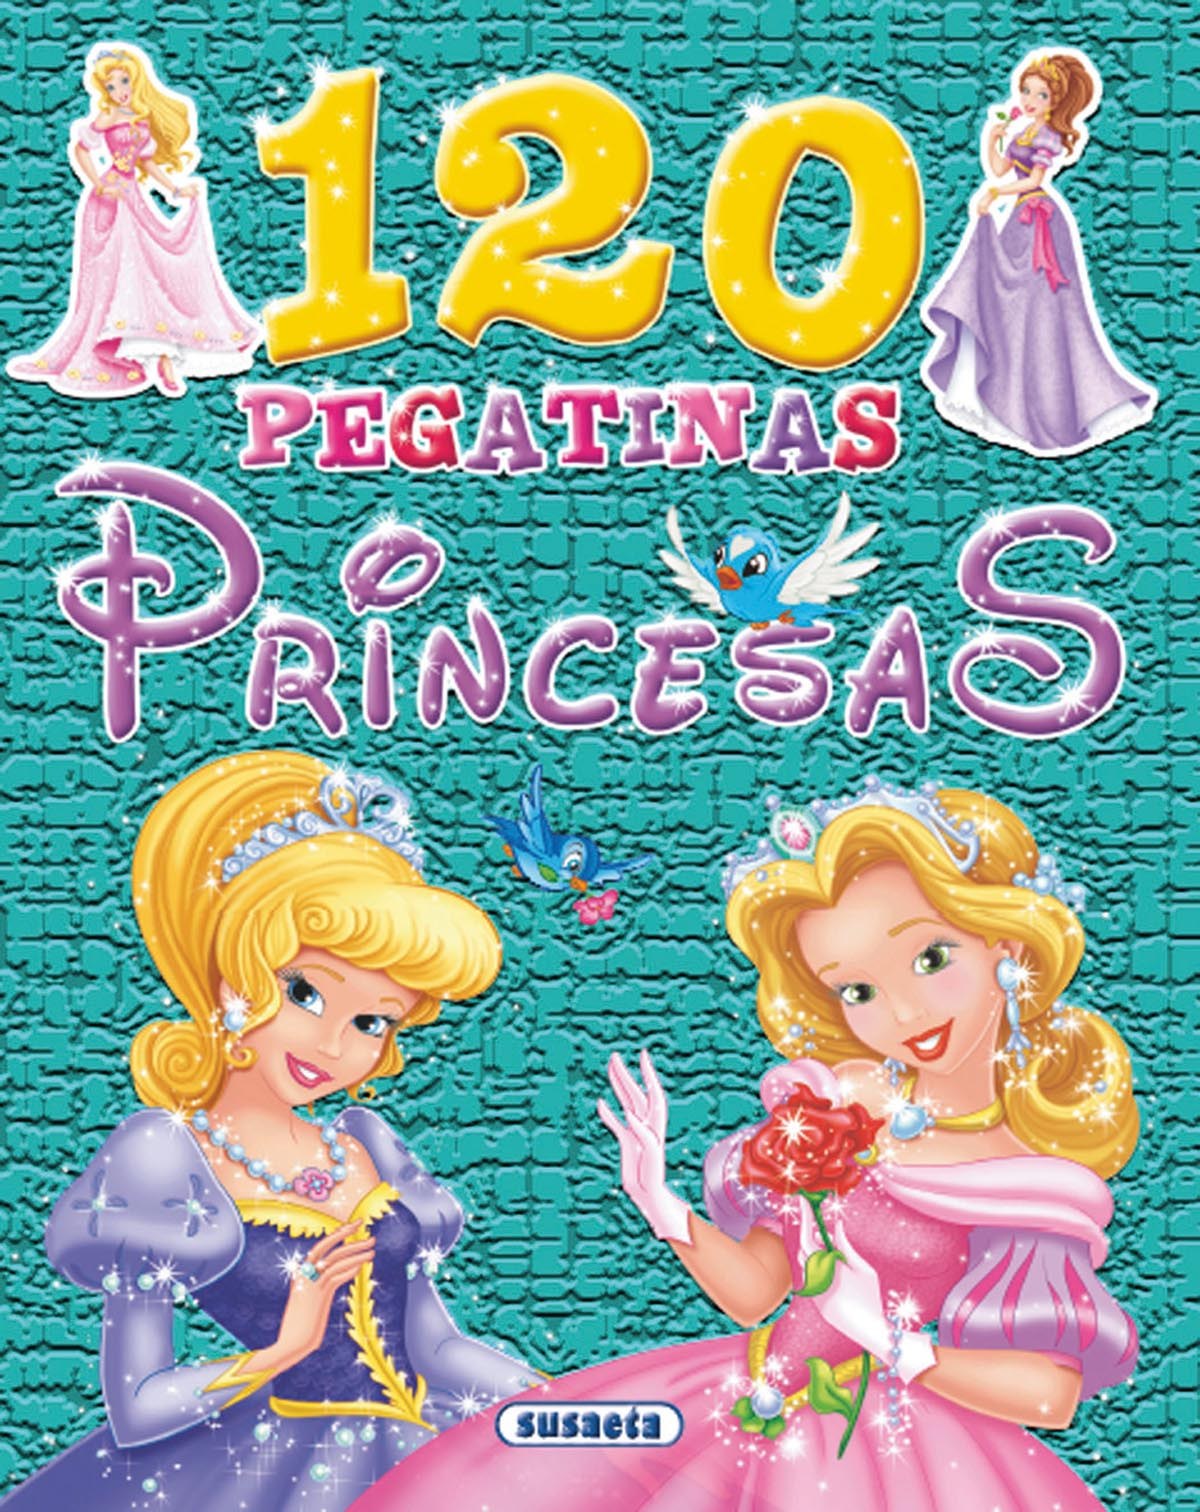 120 pegatinas princesas - Vv.Aa.